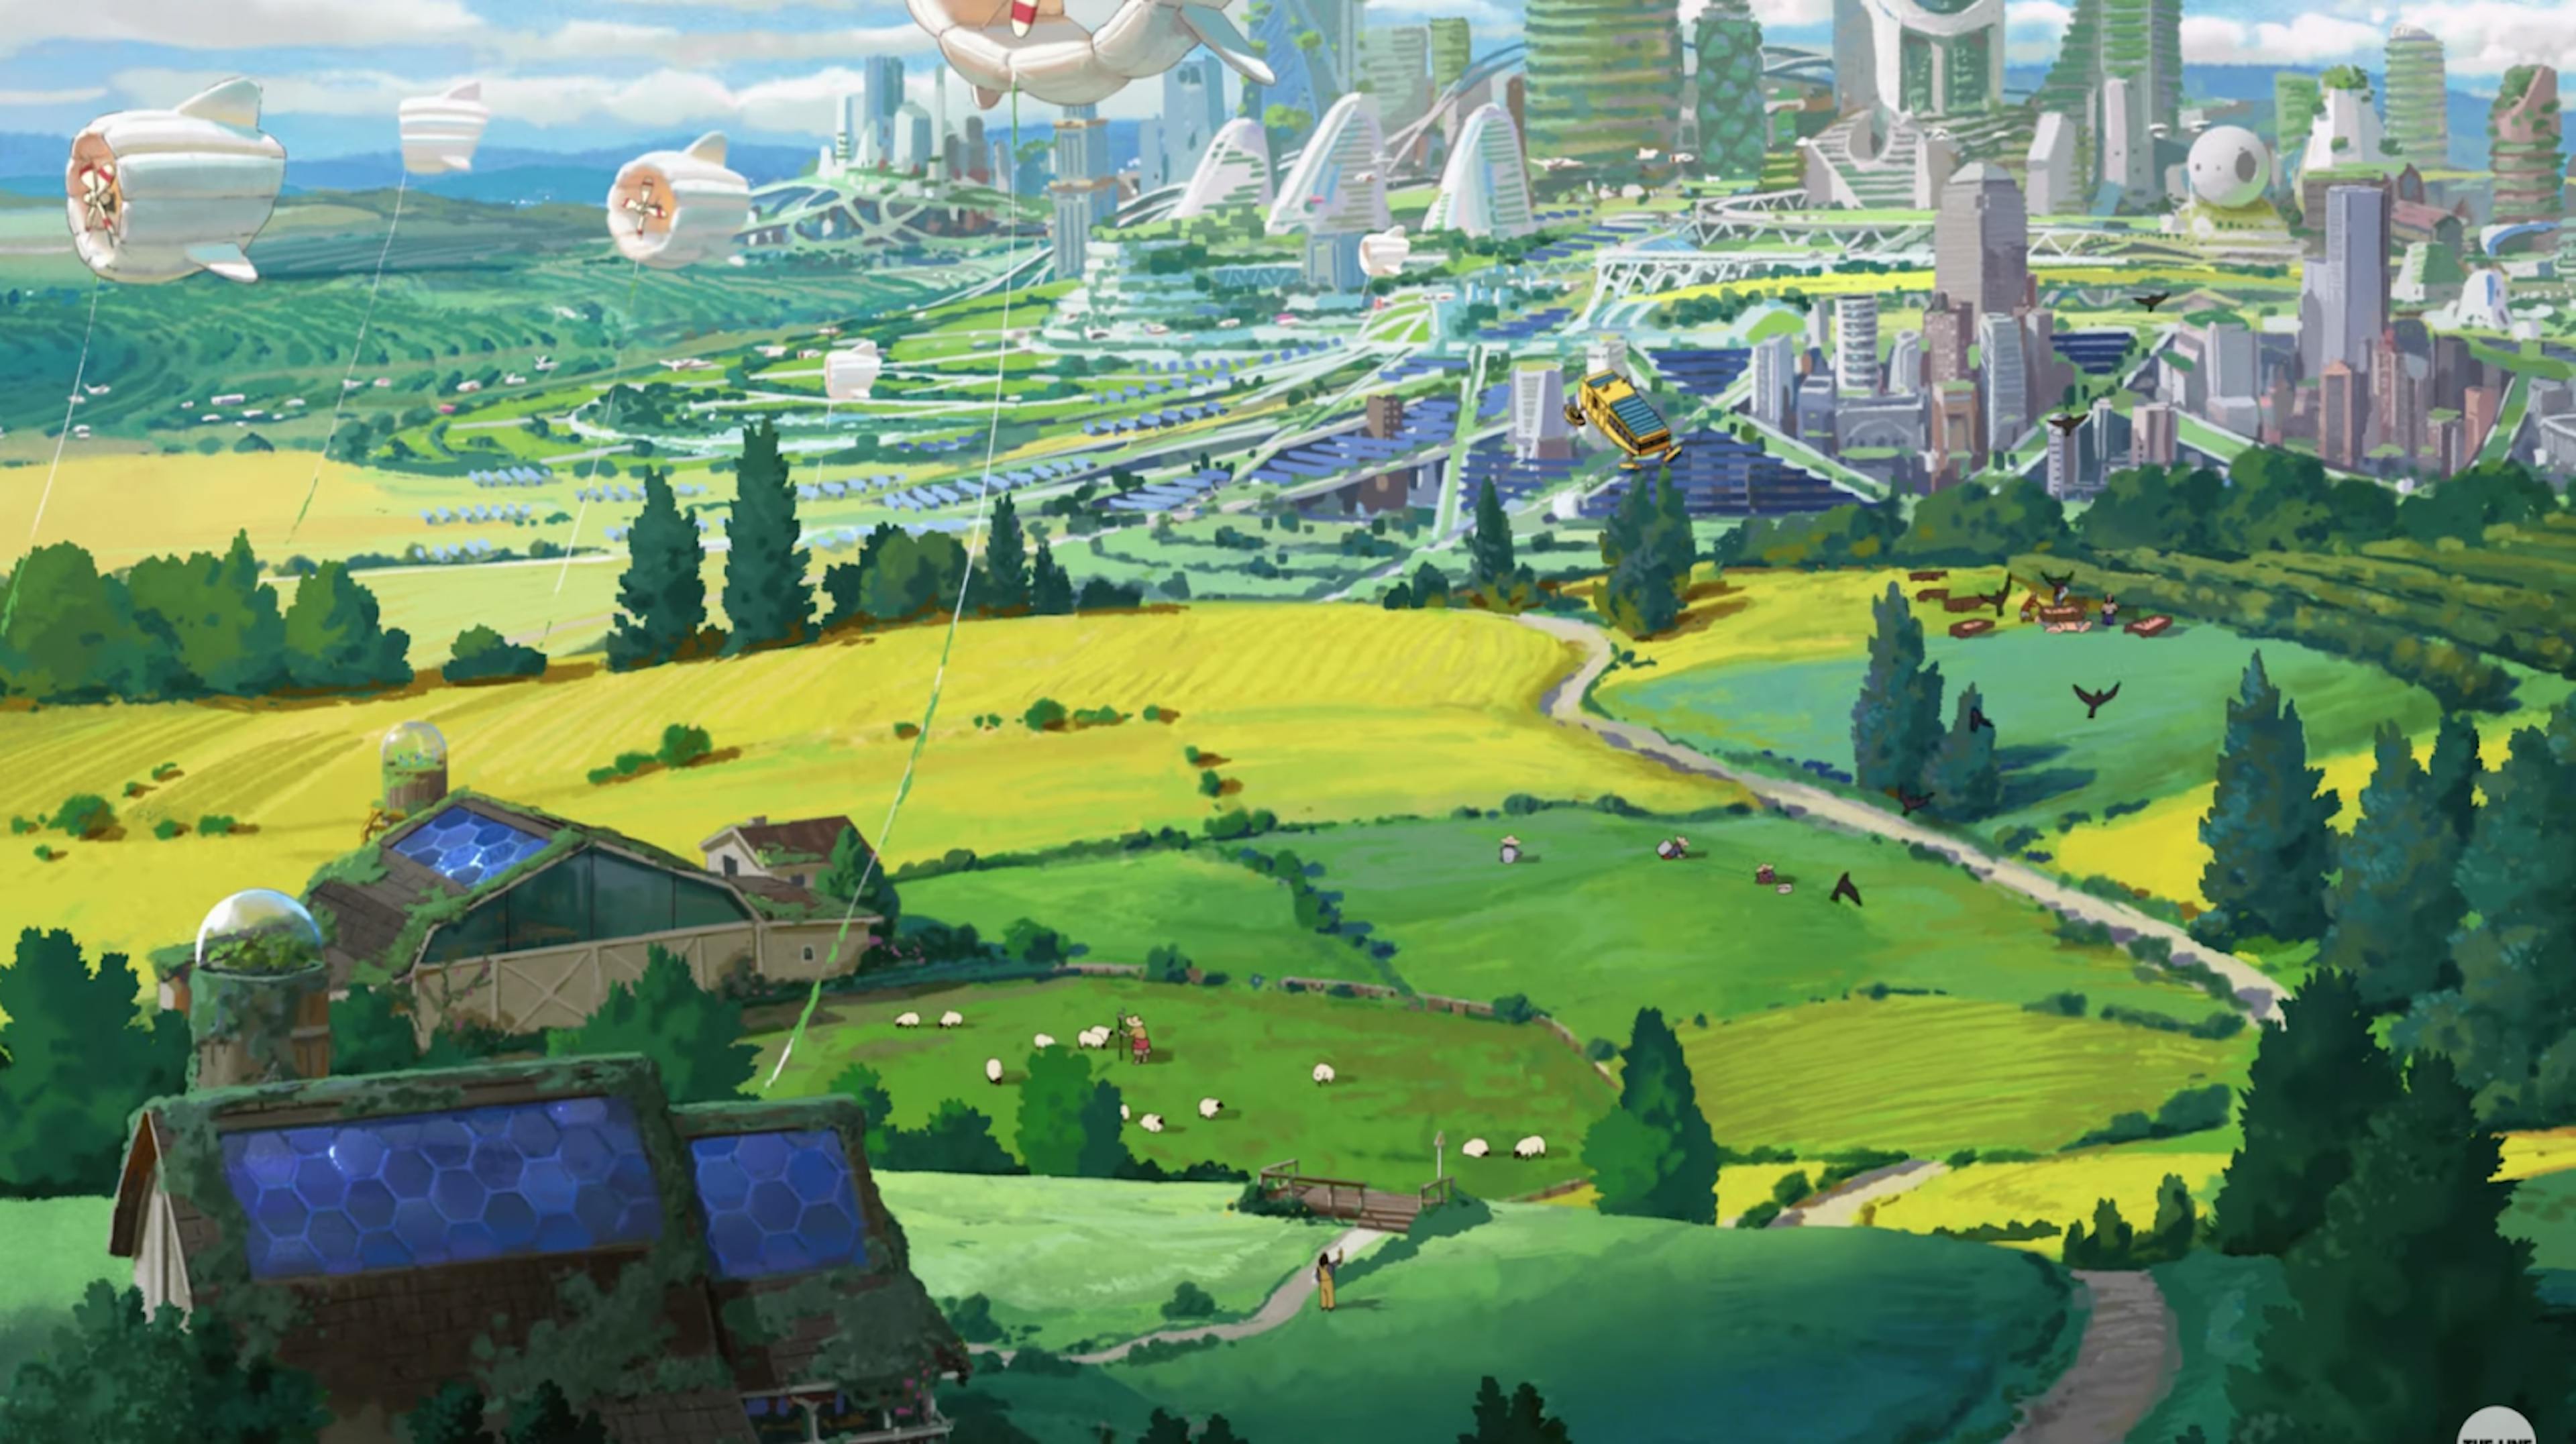 Une image tirée de la publicité pour l'anime Chobani Dear Alice de The Line; mettant en vedette un avenir solarpunk et une partition d'un compositeur Ghibli. Disponible sur https://www.youtube.com/watch?v=z-Ng5ZvrDm4.